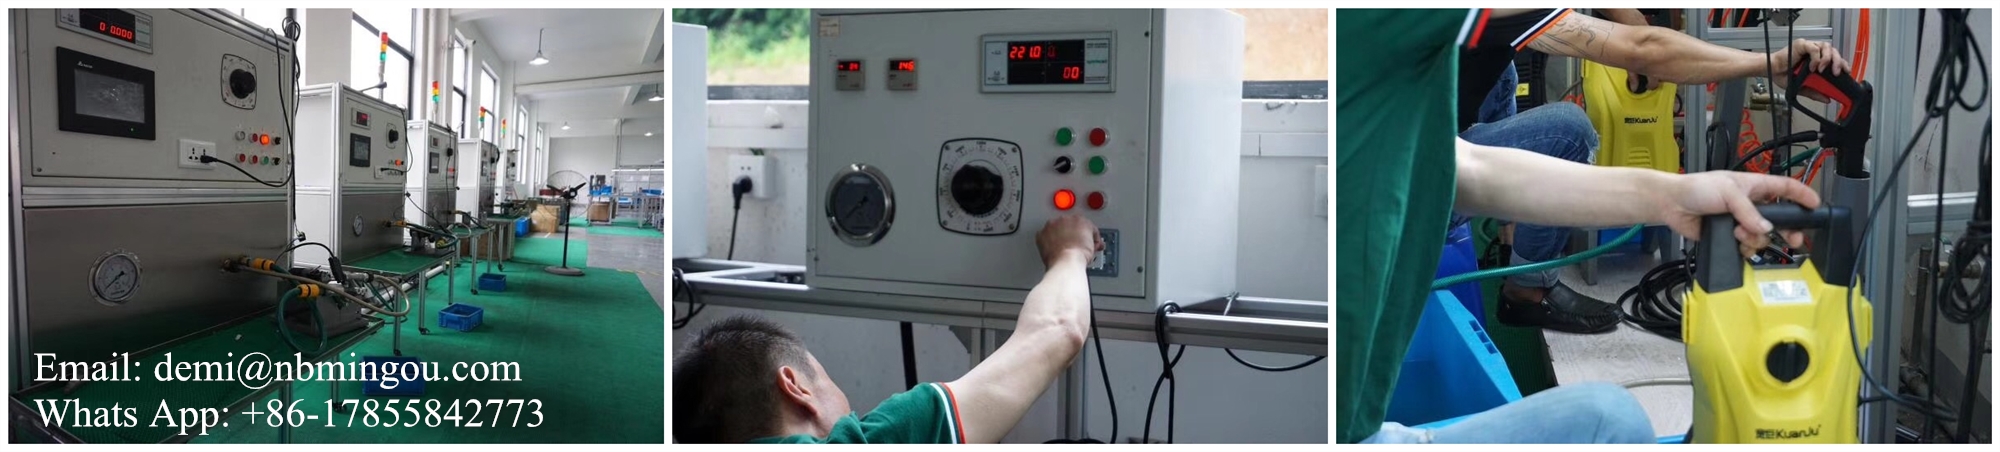 Hoher Druck für Hochdruckreinigermaschinen für Karwash -Maschinen -Maschinen